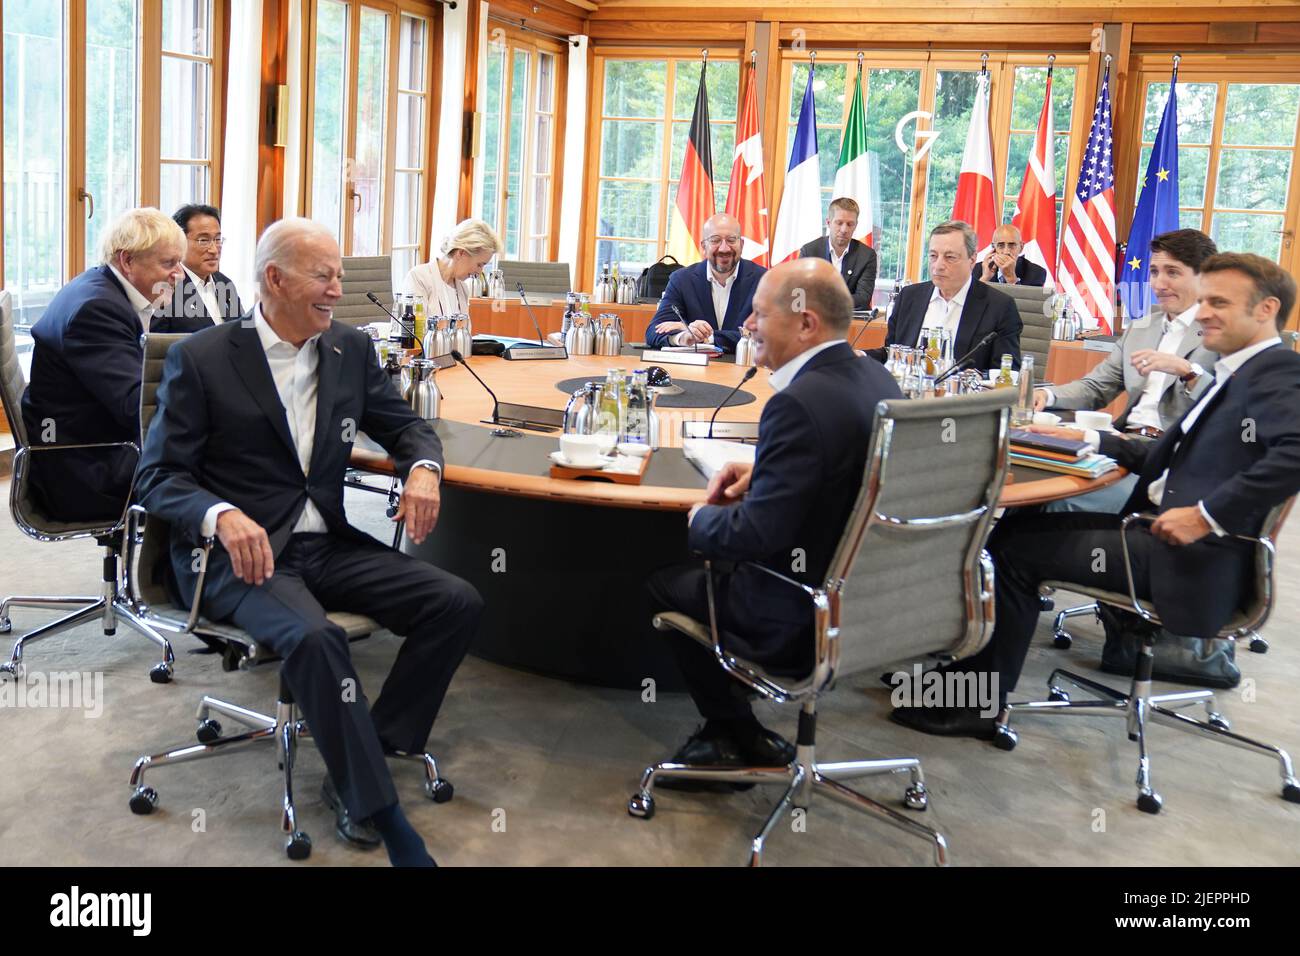 (De gauche à droite) le président des États-Unis Joe Biden, le premier ministre Boris Johnson, le premier ministre du Japon Fumio Kishida, le président de la Commission de l'Union européenne Ursula von der Leyen, le président du Conseil de l'Union européenne Charles Miche, le premier ministre de l'Italie Mario Draghi, le premier ministre du Canada Justin Trudeau, Président de la France Emmanuel Macron et chancelier allemand OLAF Scholz lors d'une session de travail au sommet de G7 à Schloss Elmau, dans les Alpes bavaroises, en Allemagne. Date de la photo: Mardi 28 juin 2022. Banque D'Images